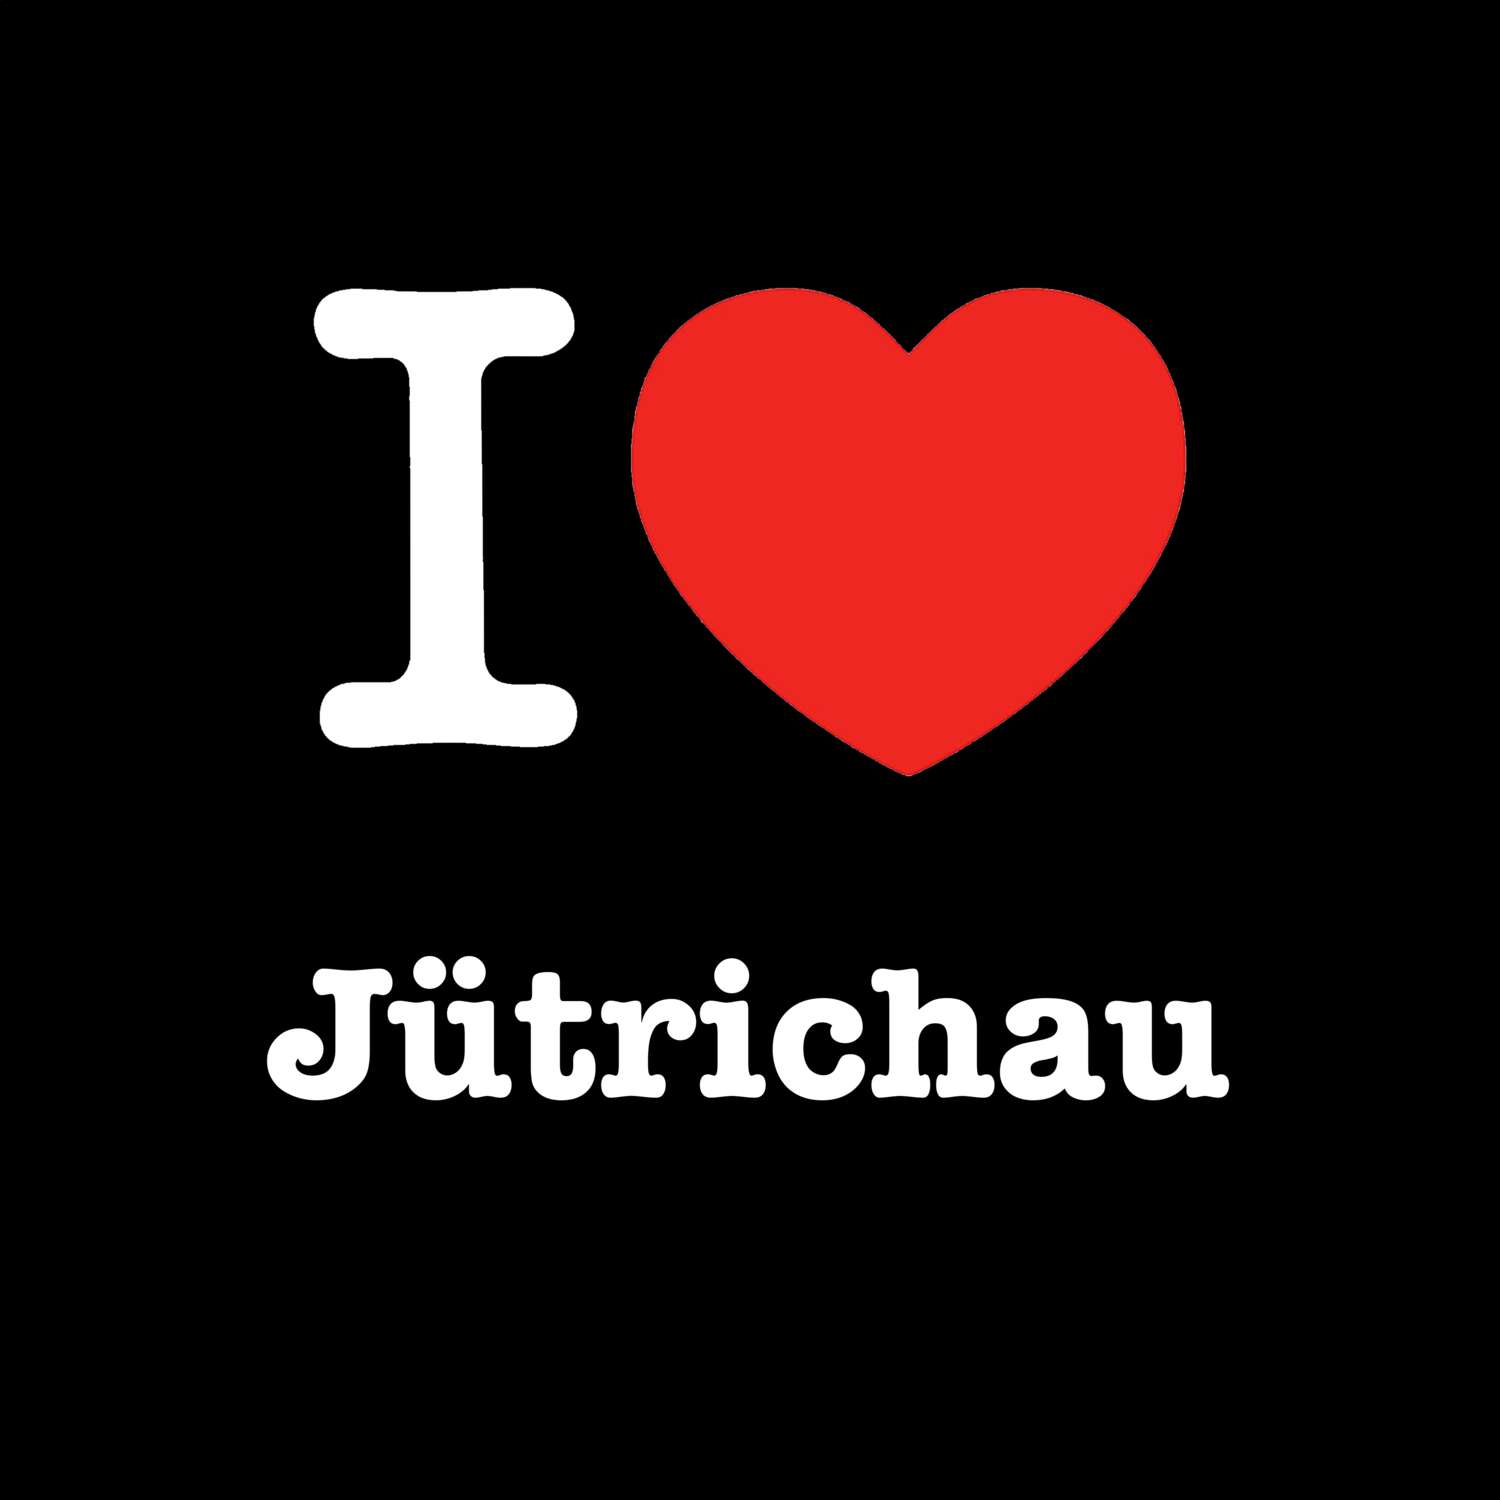 Jütrichau T-Shirt »I love«